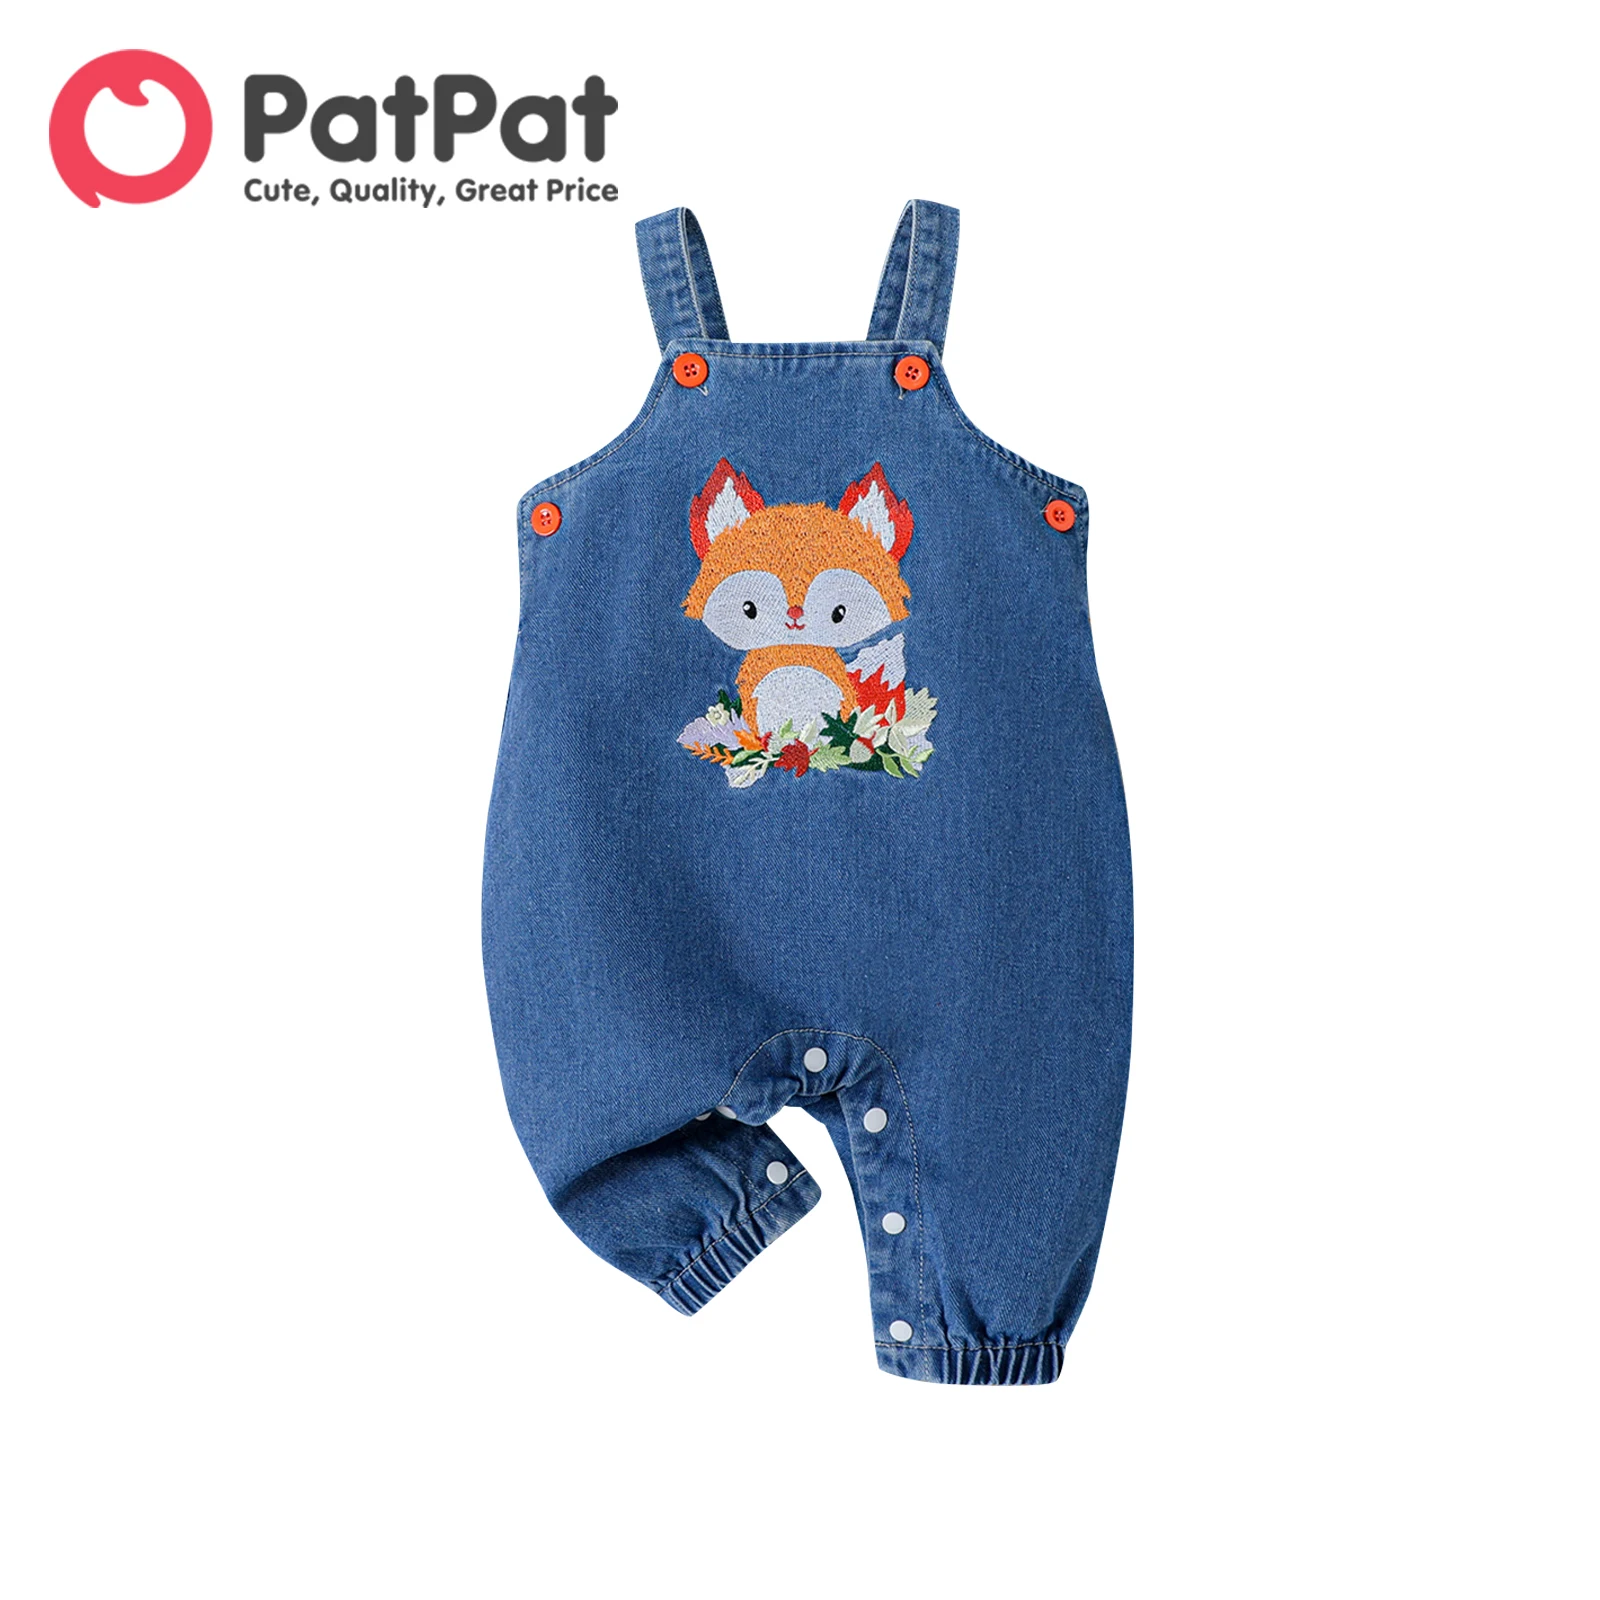 PatPat Erkek Bebek / Kız Tilki İşlemeli Kot Tulum